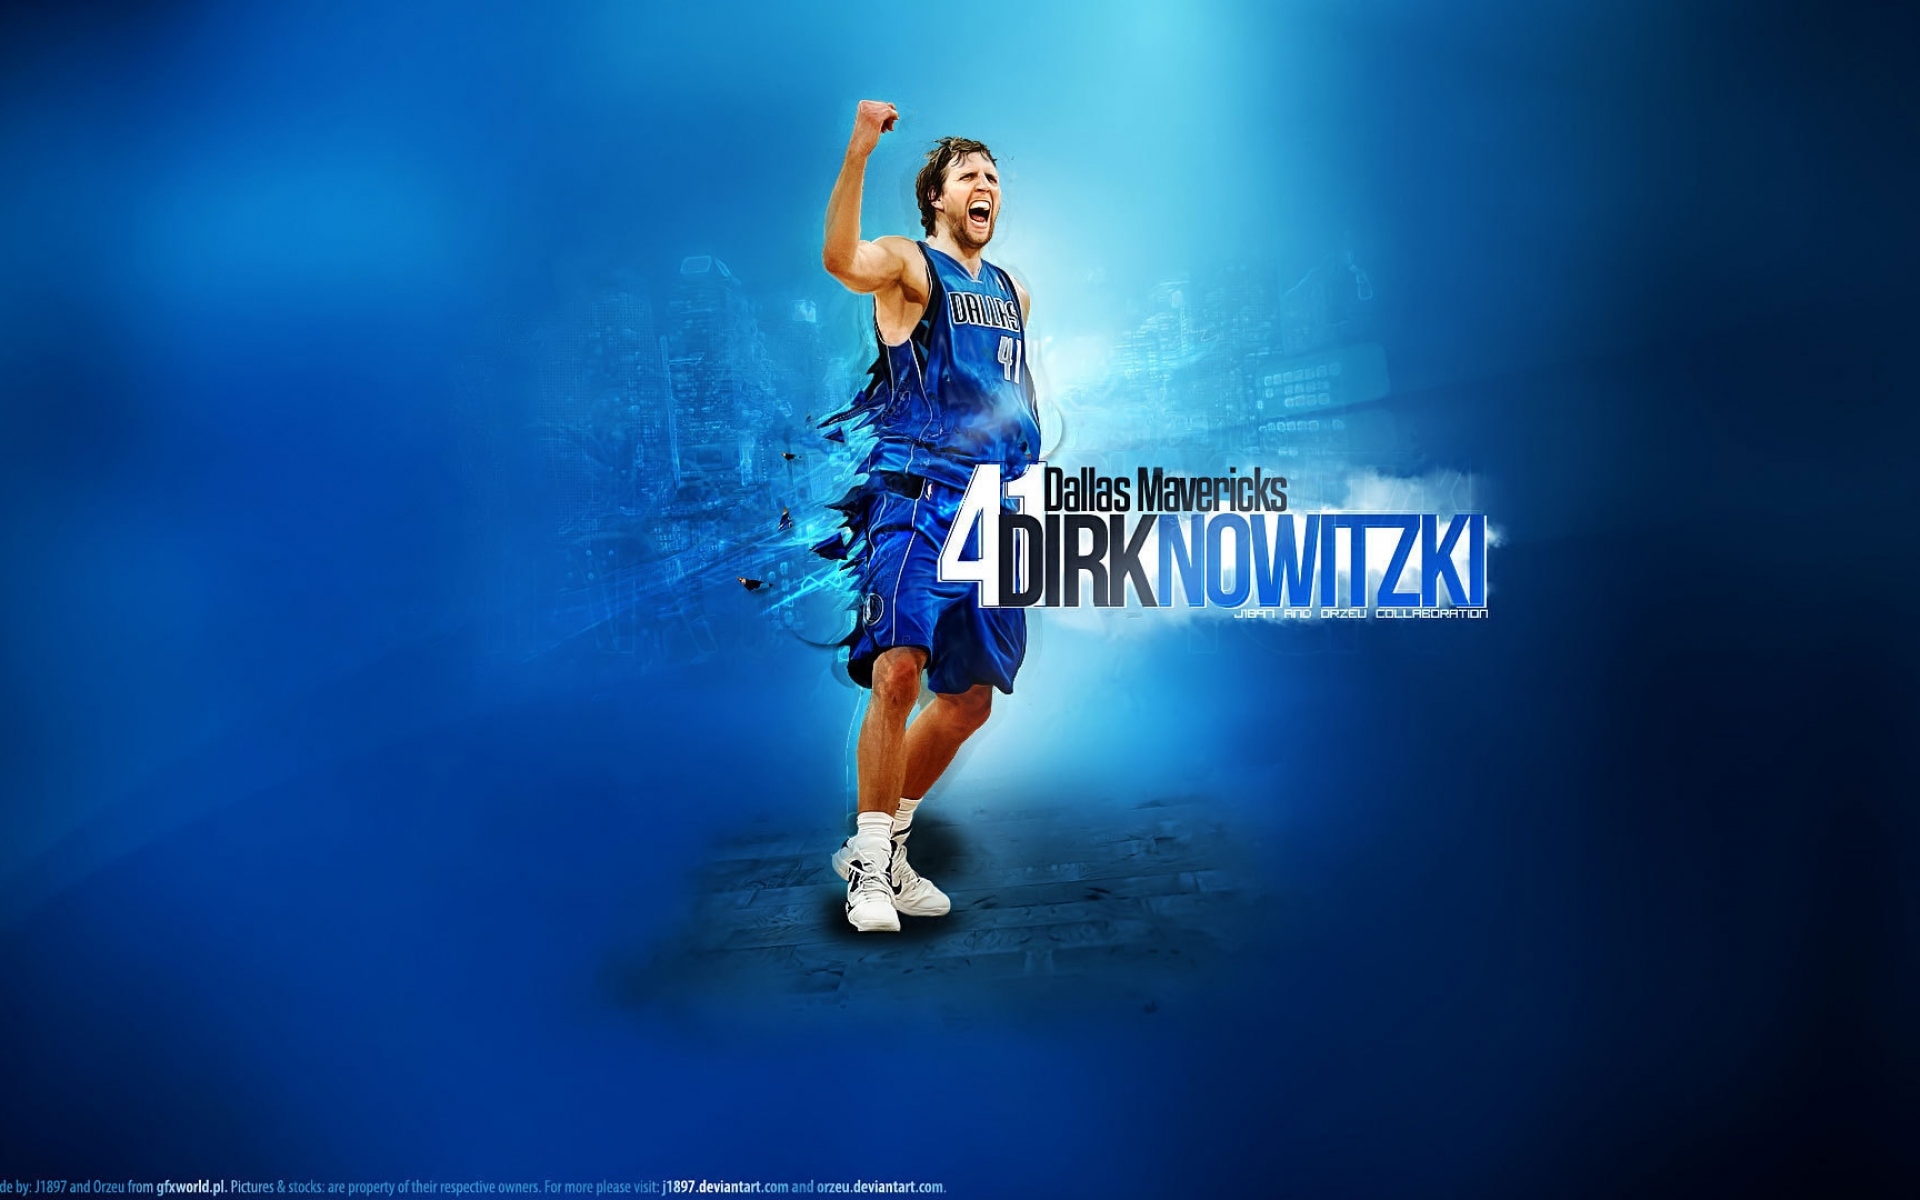 Картинки Dirk nowitzki, баскетболист, спорт, nba фото и обои на рабочий стол